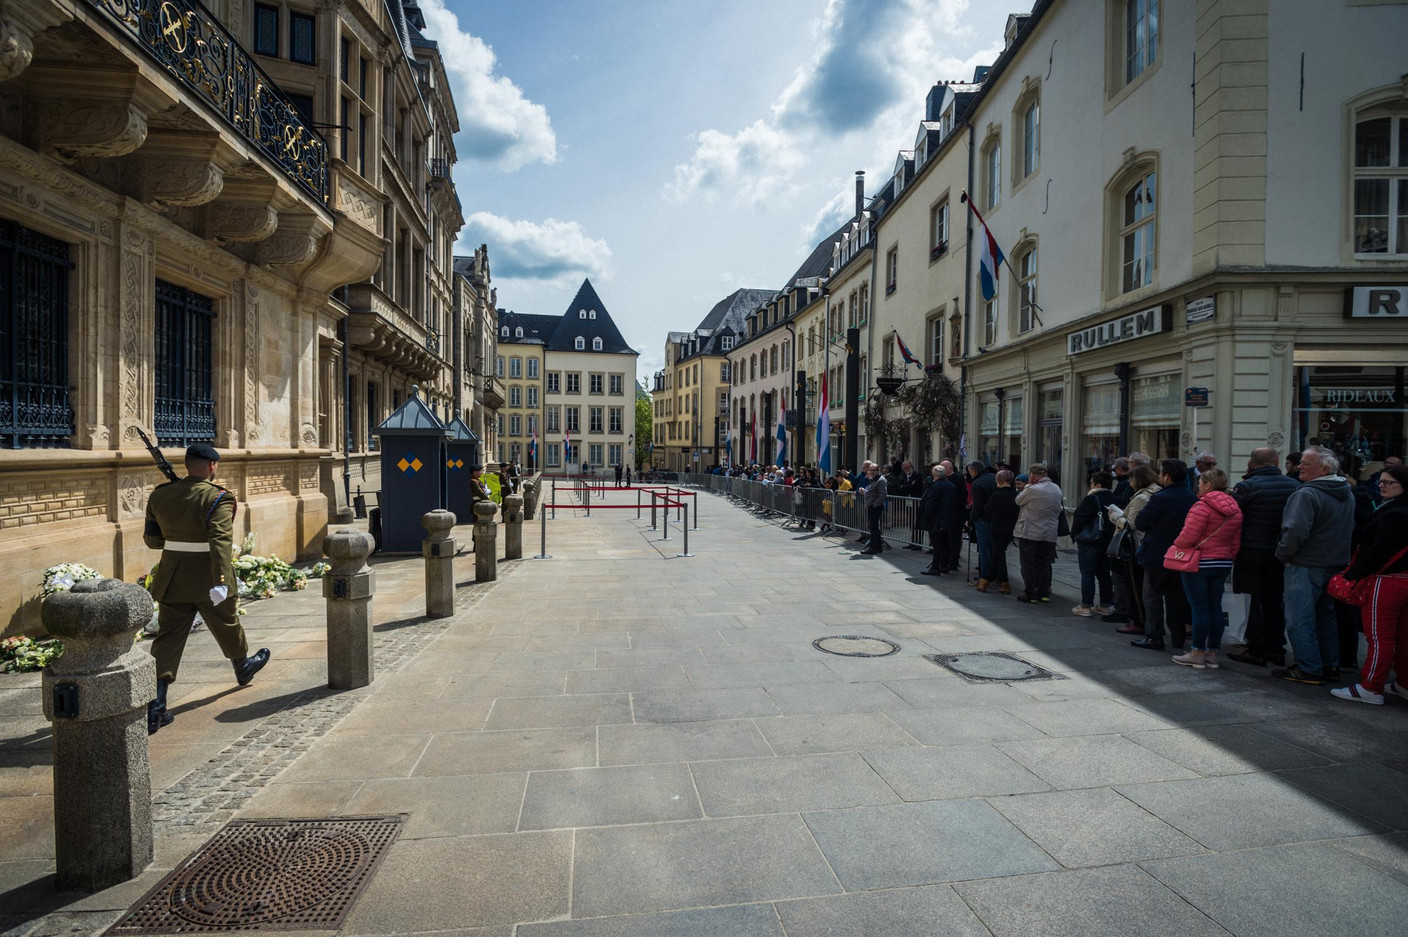 De nombreuses personnes ont fait la file devant le palais grand-ducal pour rendre hommage au Grand-Duc Jean (Photo: Mike Zenari)